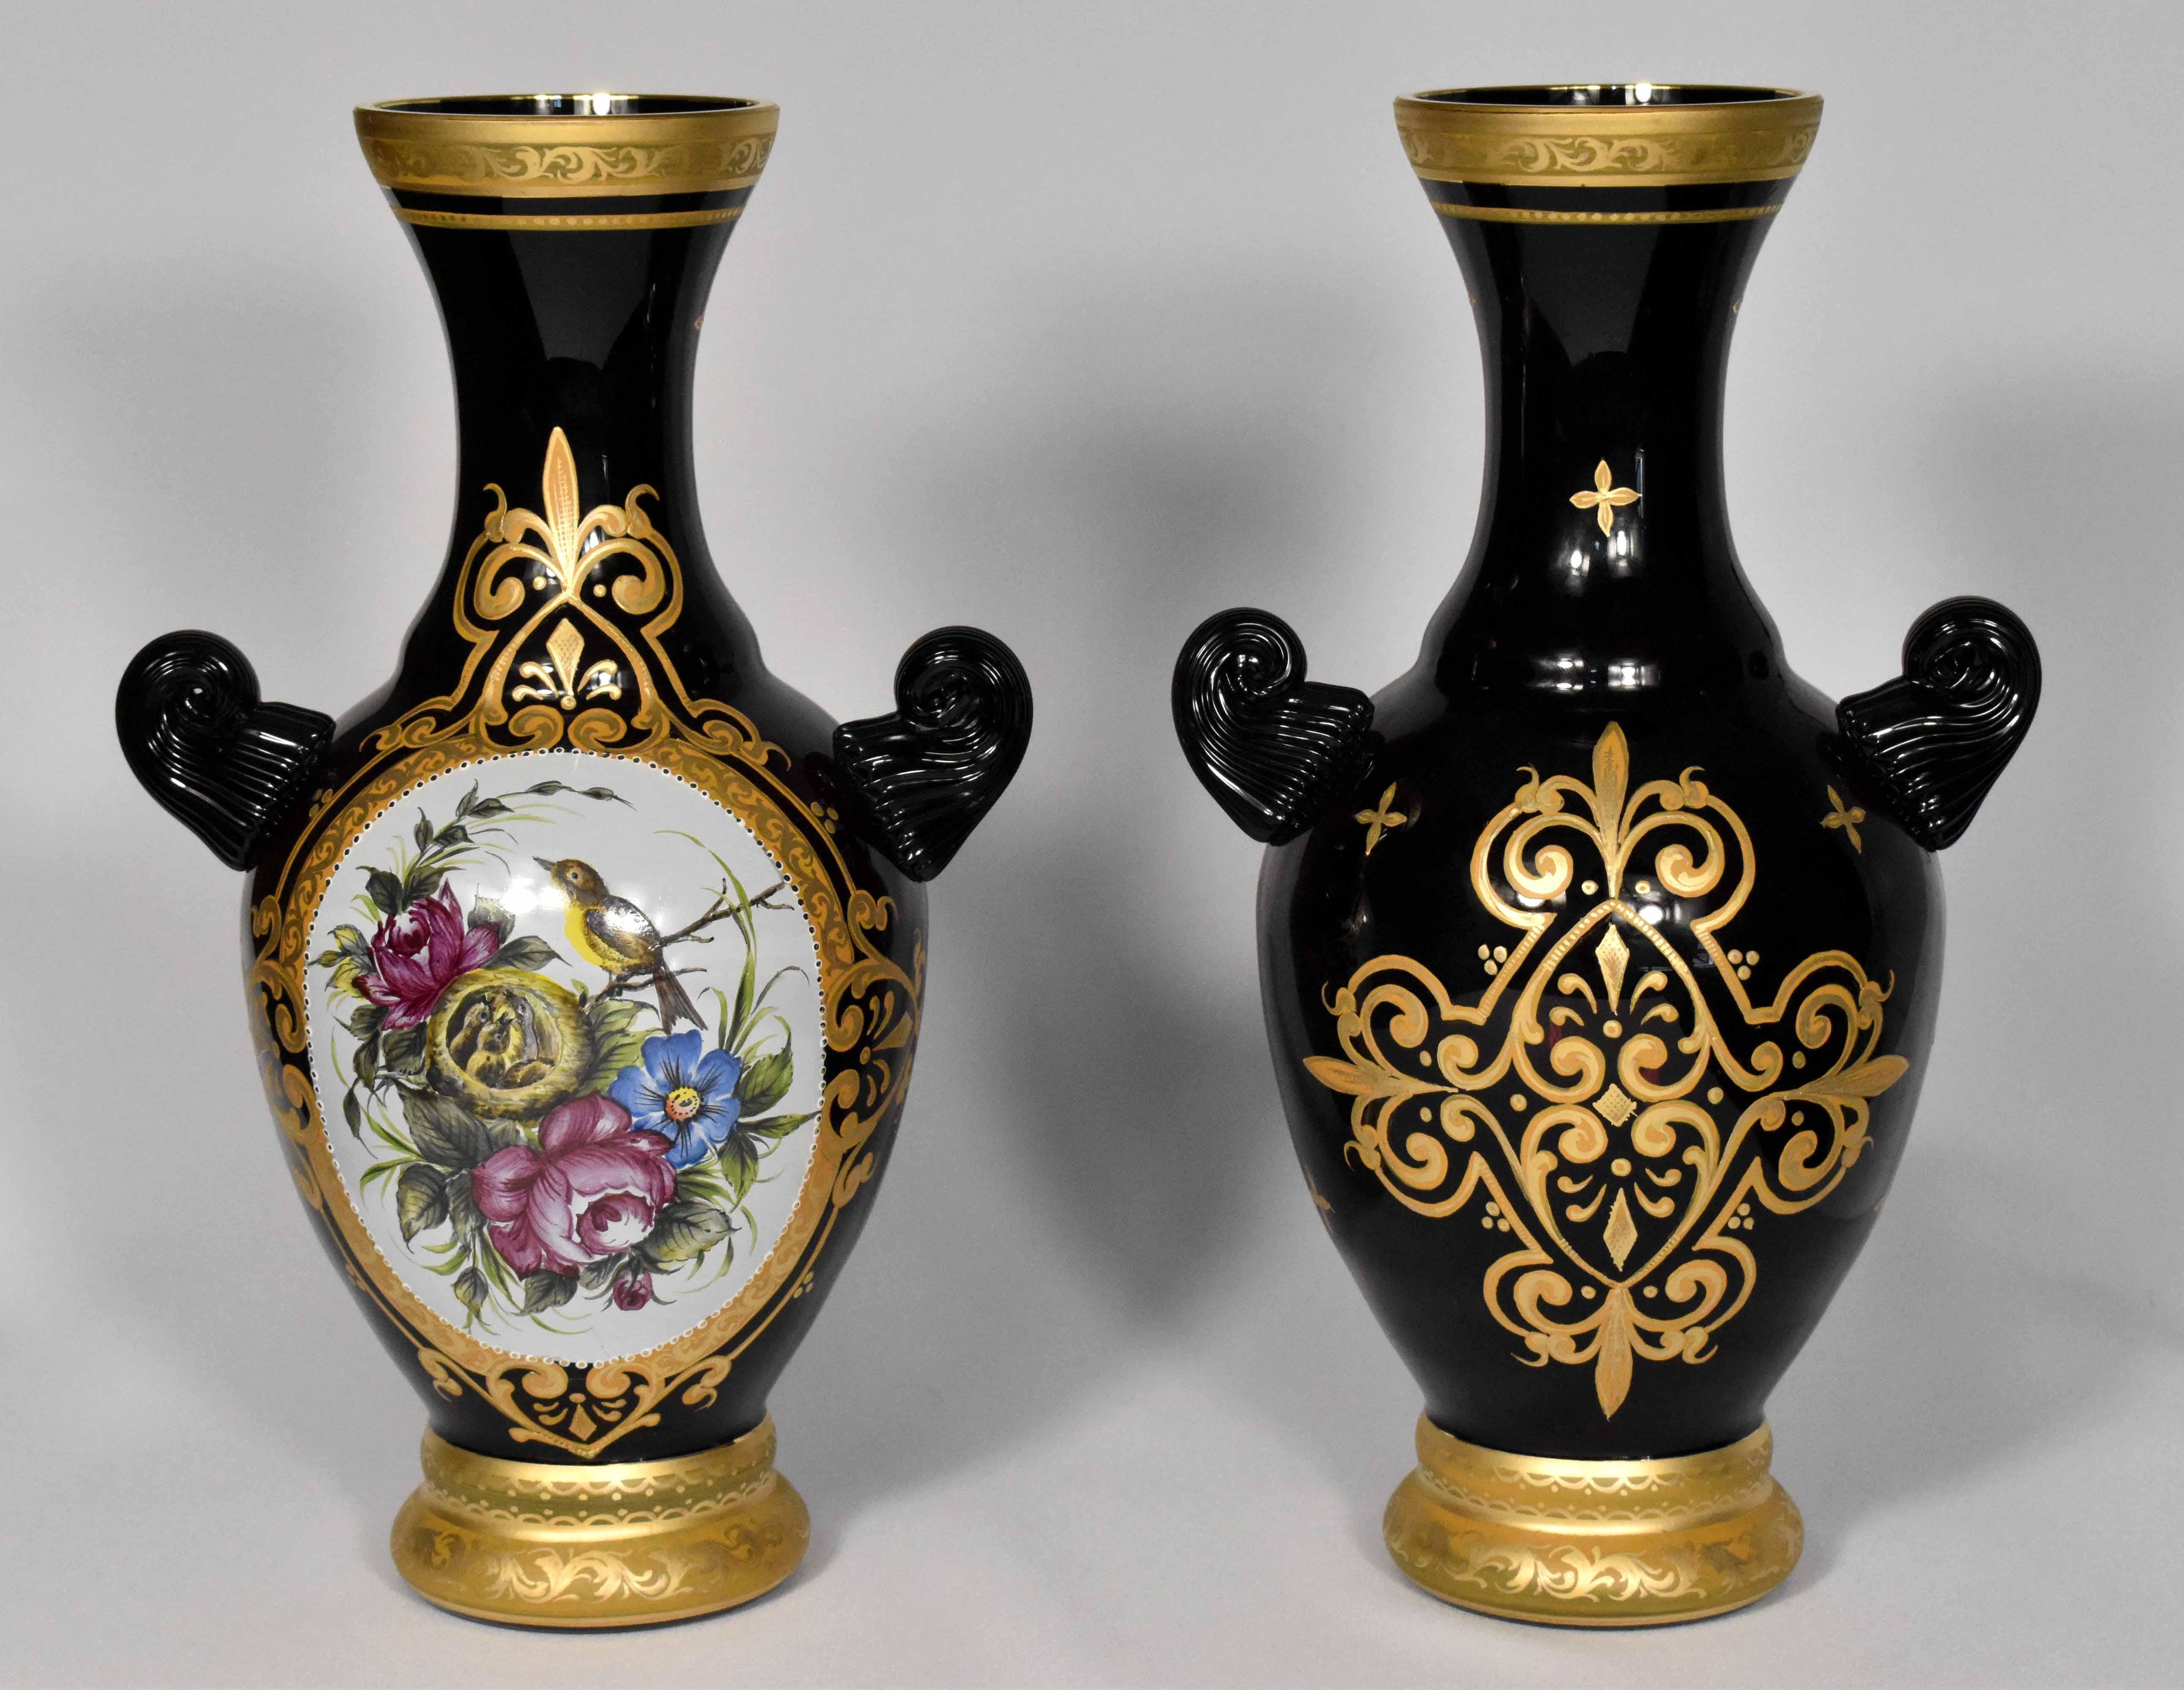 Cette magnifique paire de vases est fabriquée en verre noir/violet. 
Ils sont soufflés à la main dans un atelier de verrerie du nord de la République tchèque, selon les techniques traditionnelles des maîtres verriers du XIXe siècle.
Ils sont